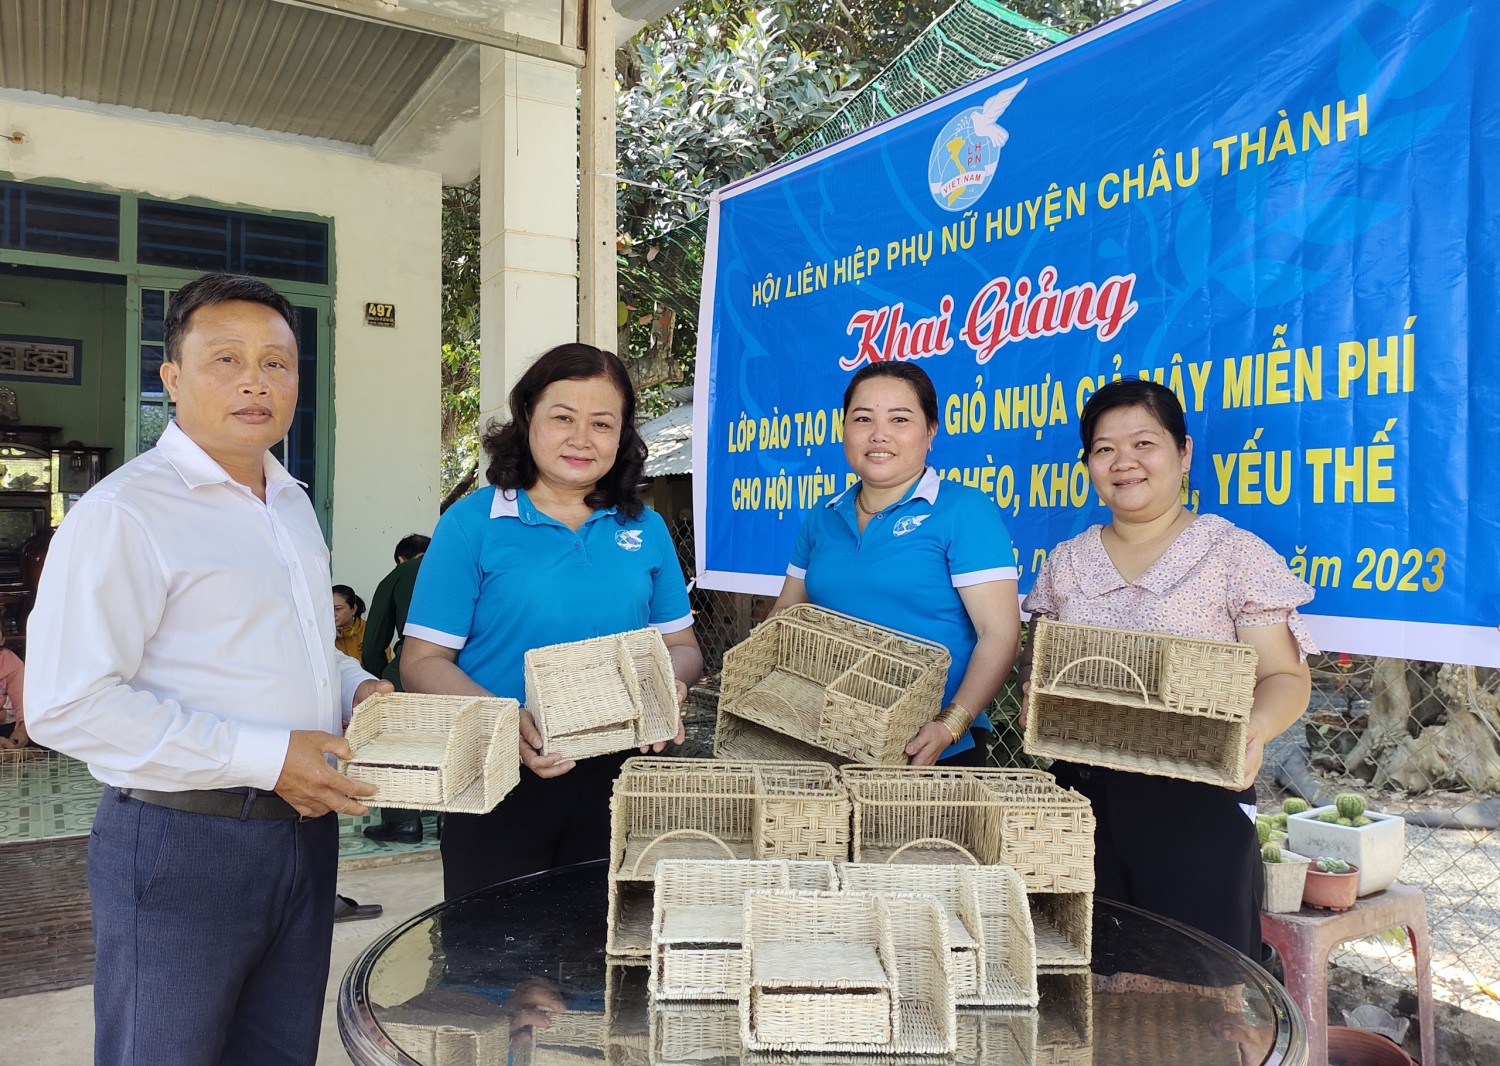 Hội LHPN huyện Châu Thành: Khai giảng lớp đào tạo nghề đan giỏ nhựa giả mây cho hội viên phụ nữ